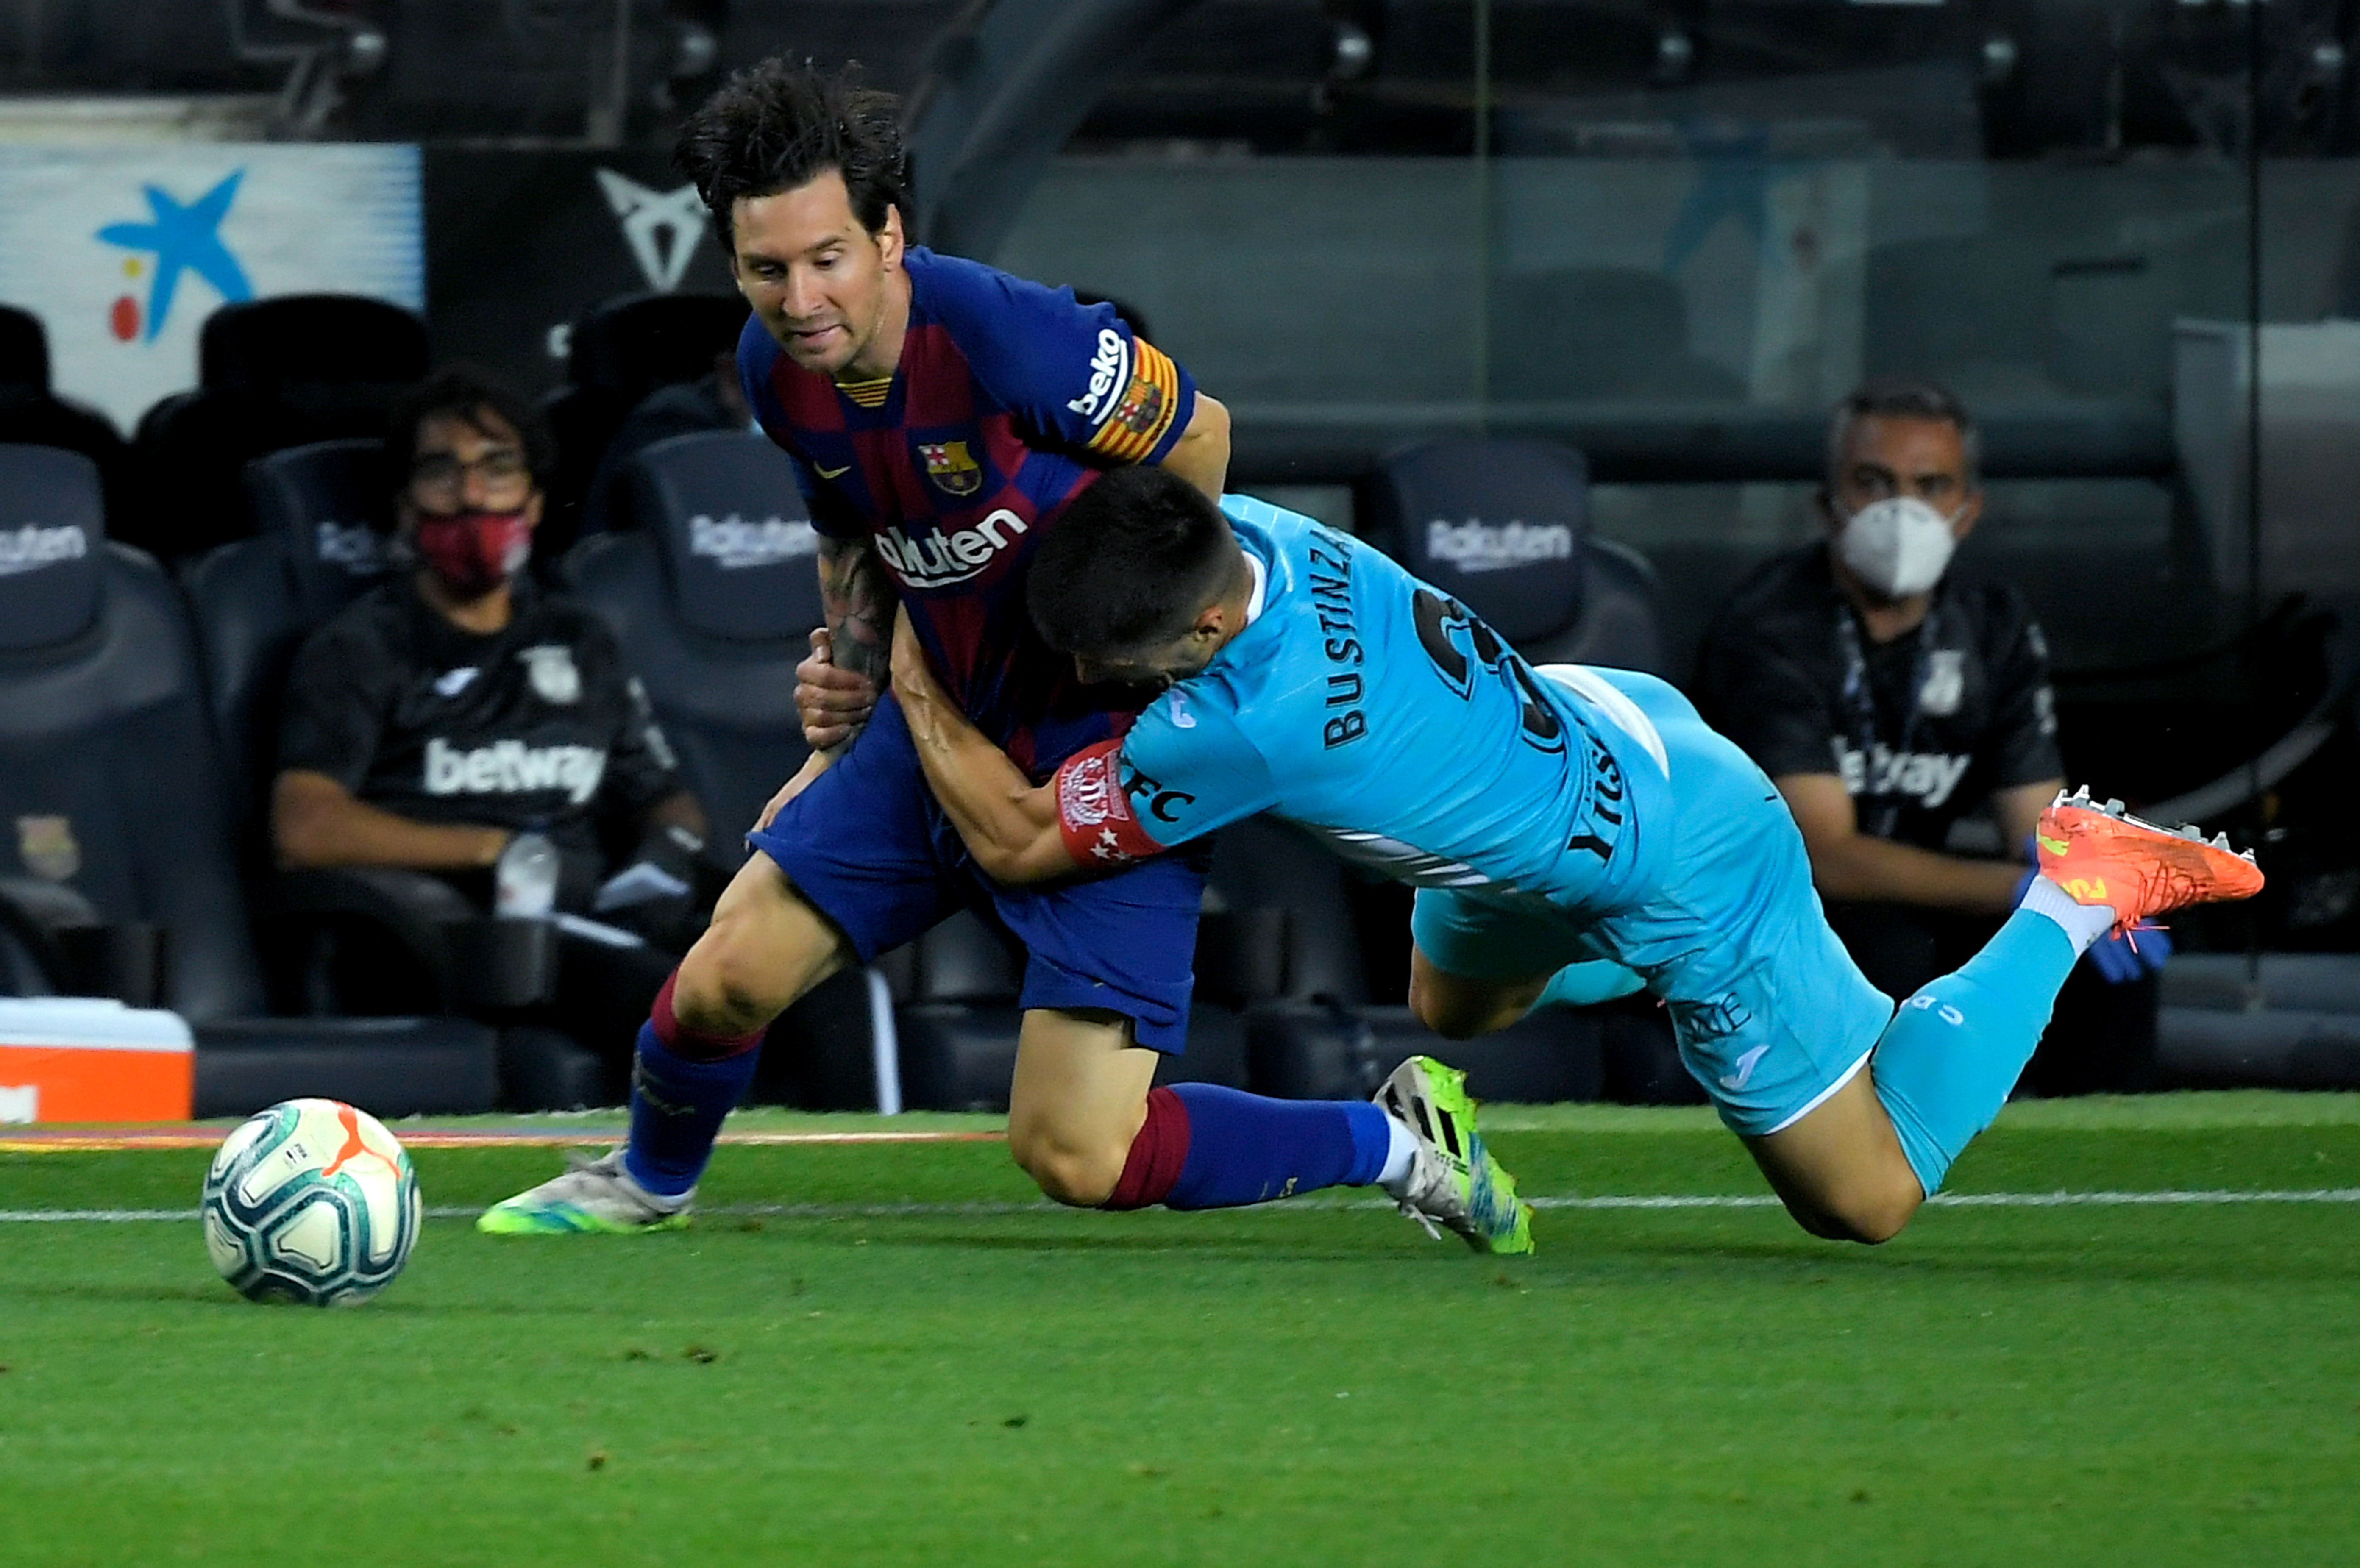 Esta es la foto de Messi que se hizo viral | Foto: AFP.